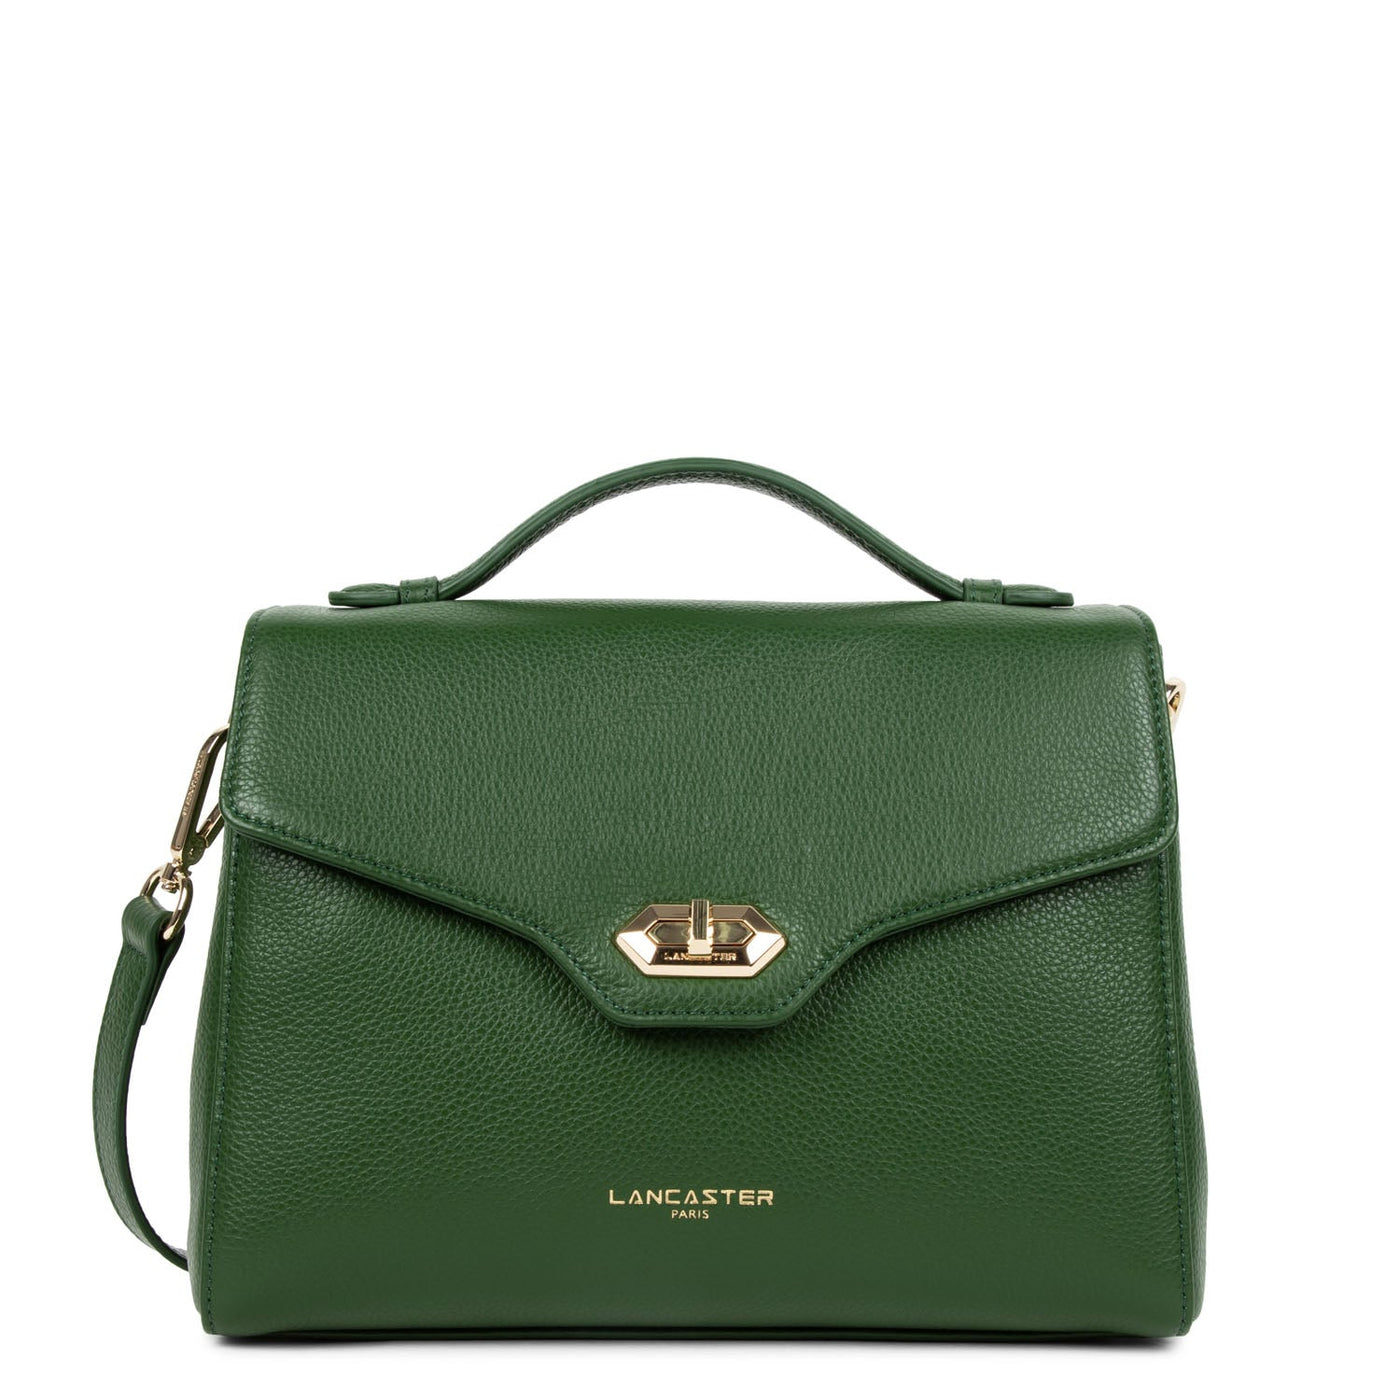 handbag - foulonné milano #couleur_vert-pin